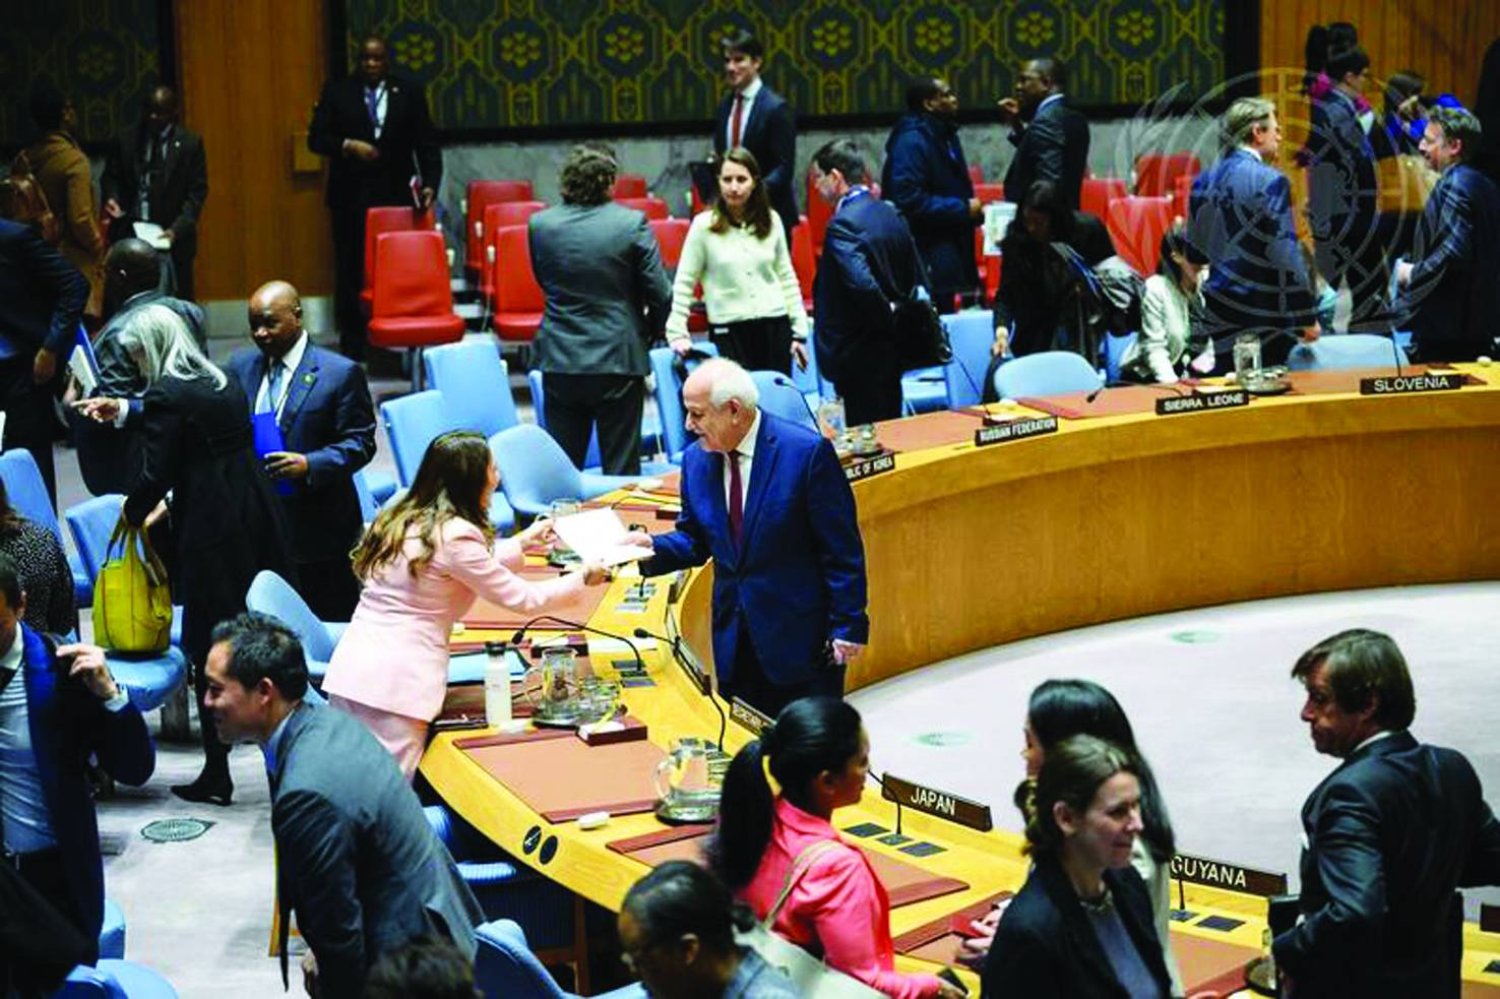 المندوب دولة فلسطين المراقبة رياض منصور يصافح رئيسة مجلس الأمن للشهر الحالي المندوبة المالطية فانيسا فرايزر (صور الأمم المتحدة)